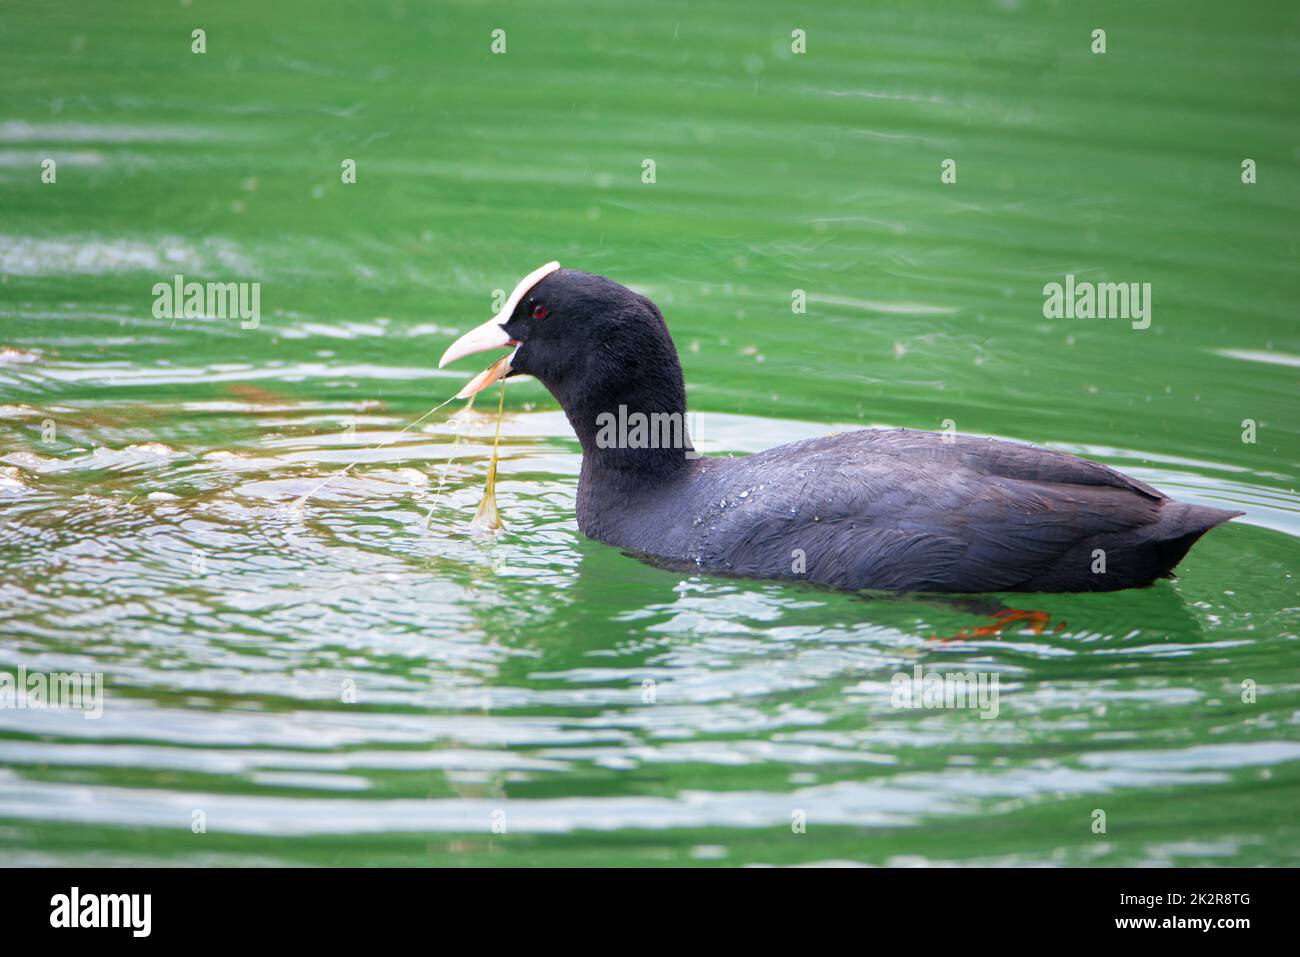 Gewöhnlicher Schwarzer Ruß, der in einem Teich schwimmend ist, Gattung Fulica, Wasservögel in Europa, Vogelbeobachtung in der Natur Stockfoto